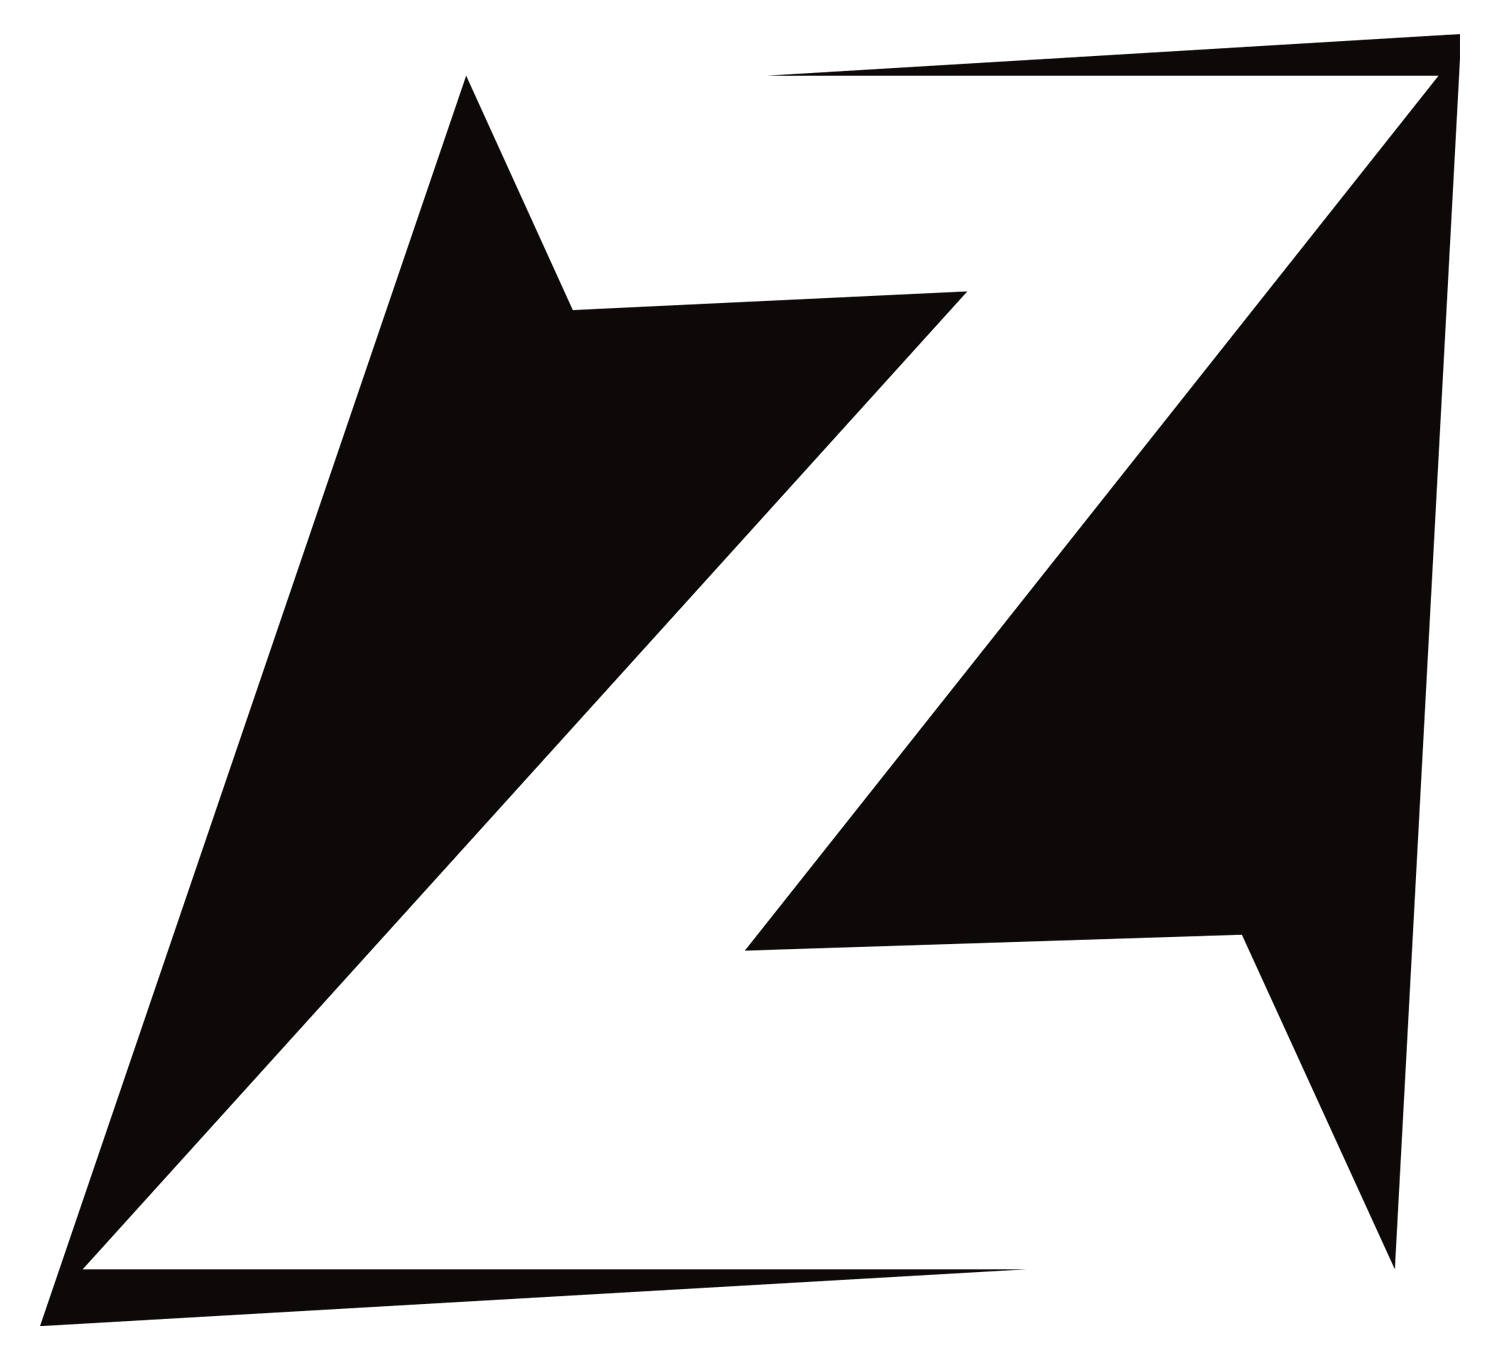 White Z Logo - File:Z télé.png - Wikimedia Commons